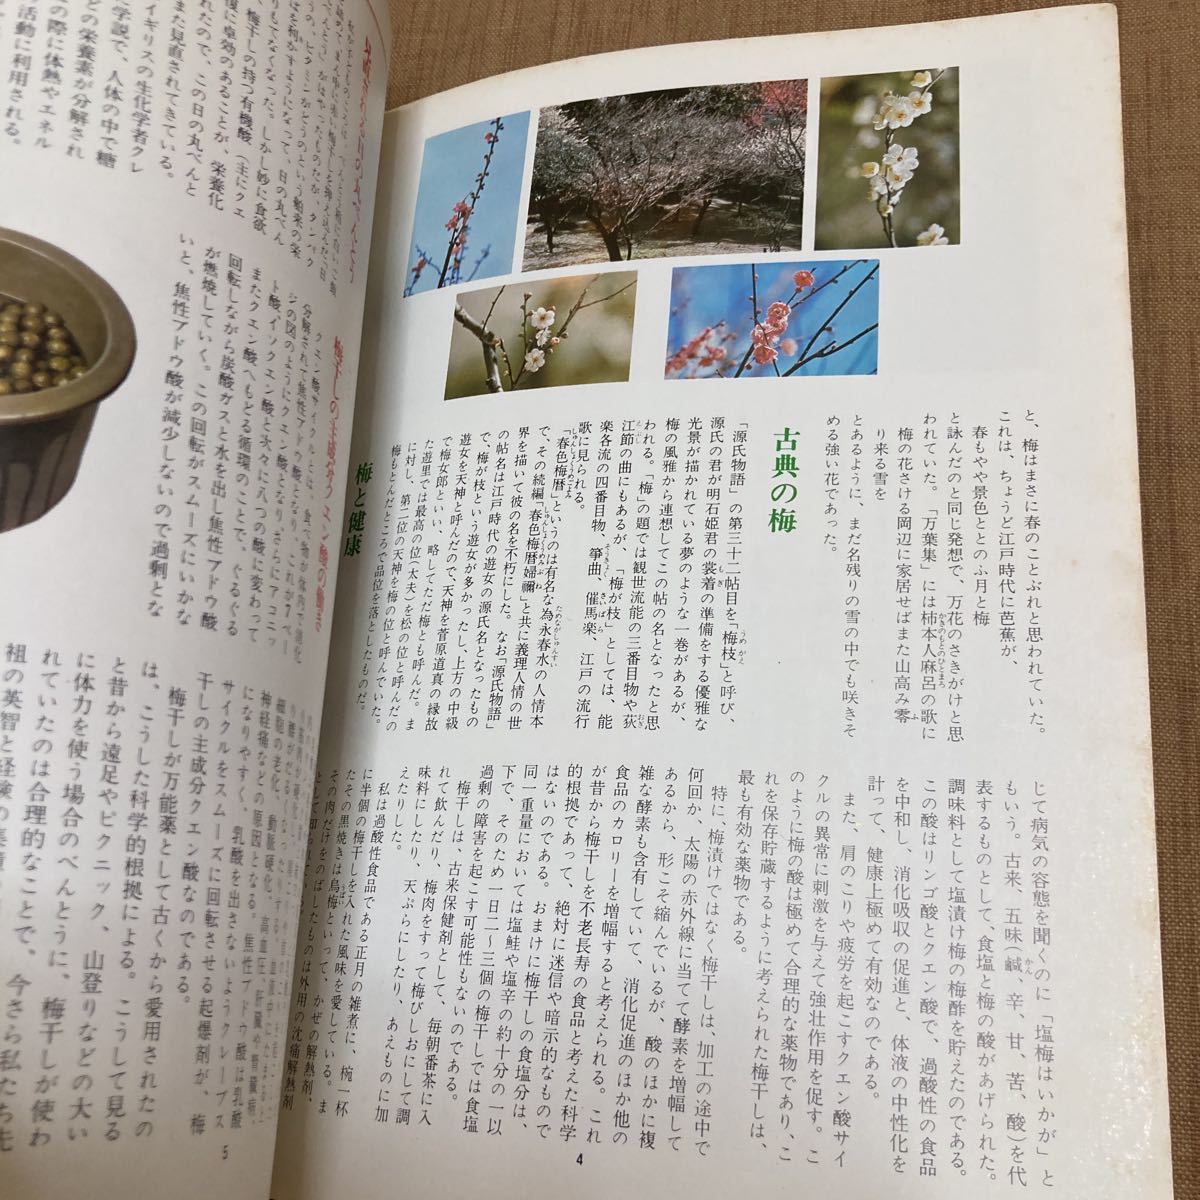 マイライフシリーズ 梅酒・梅干・梅料理 料理雑誌 1980年発行_画像3